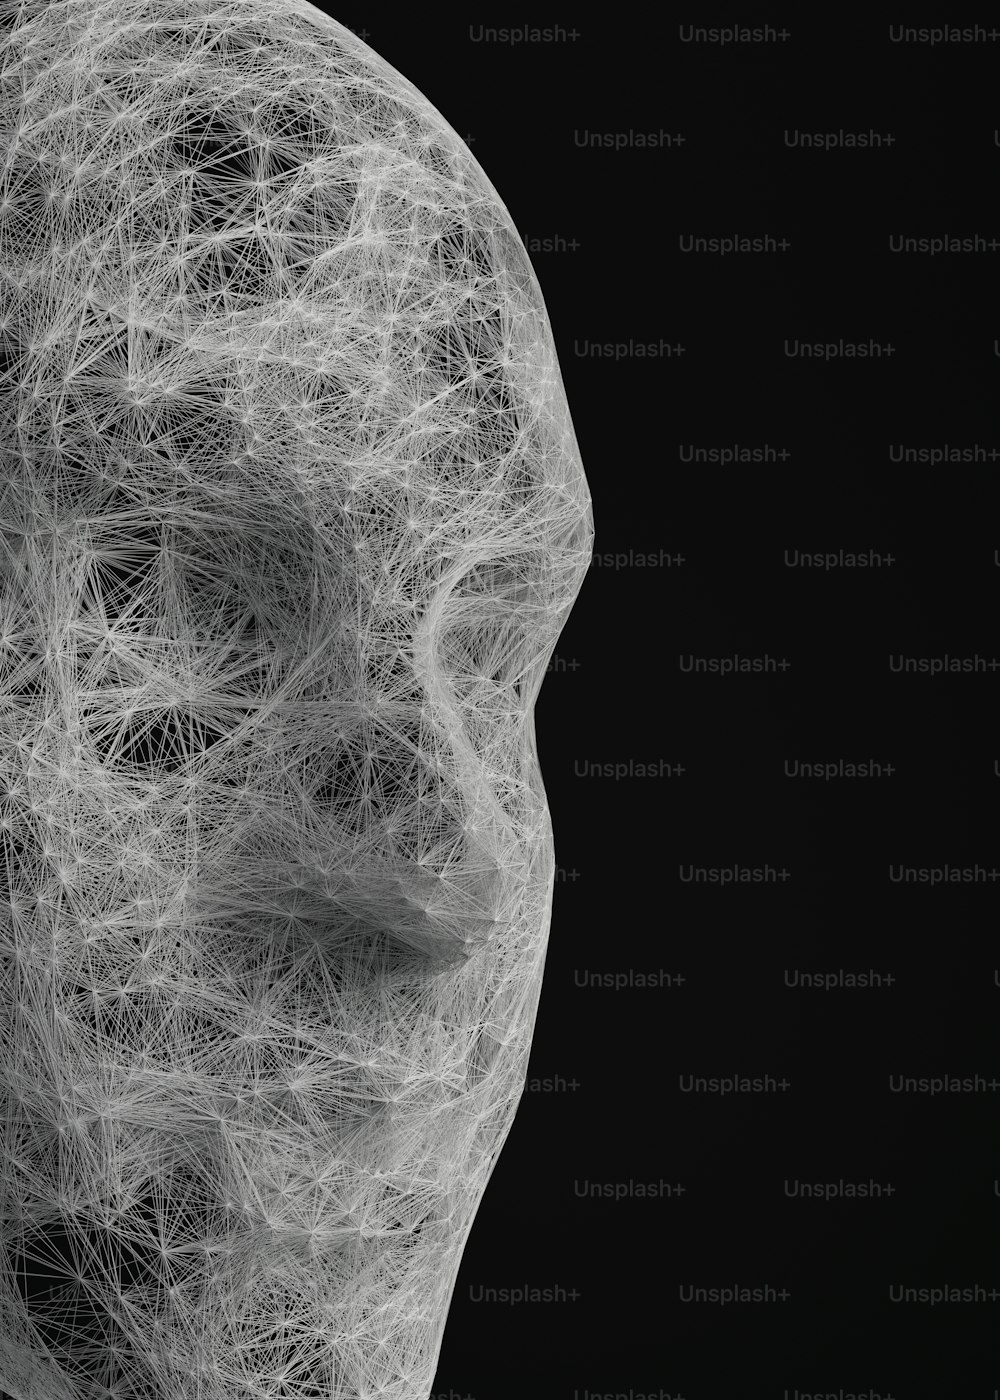 Una foto en blanco y negro de una cabeza humana